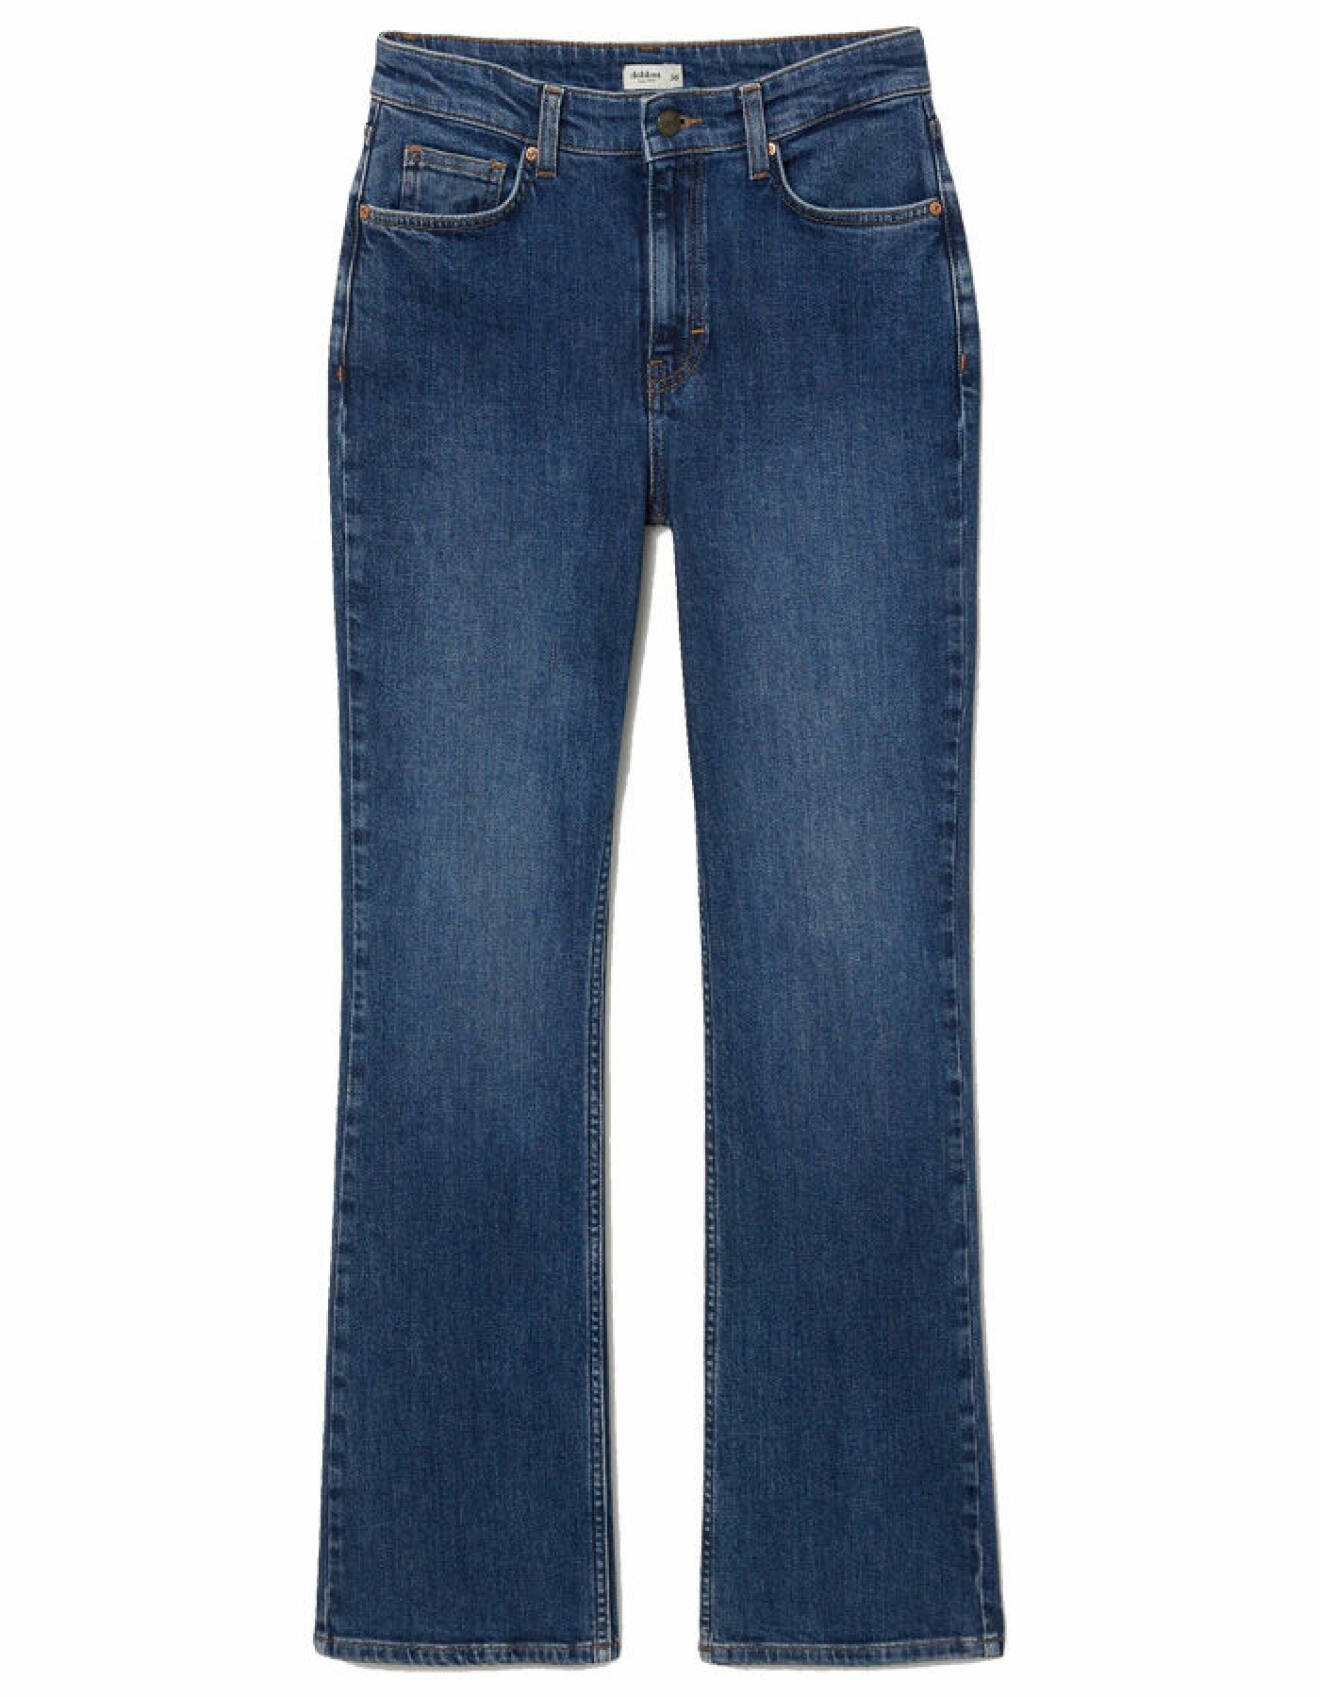 mörka bootcut jeans i mörkblå för dam från dobber